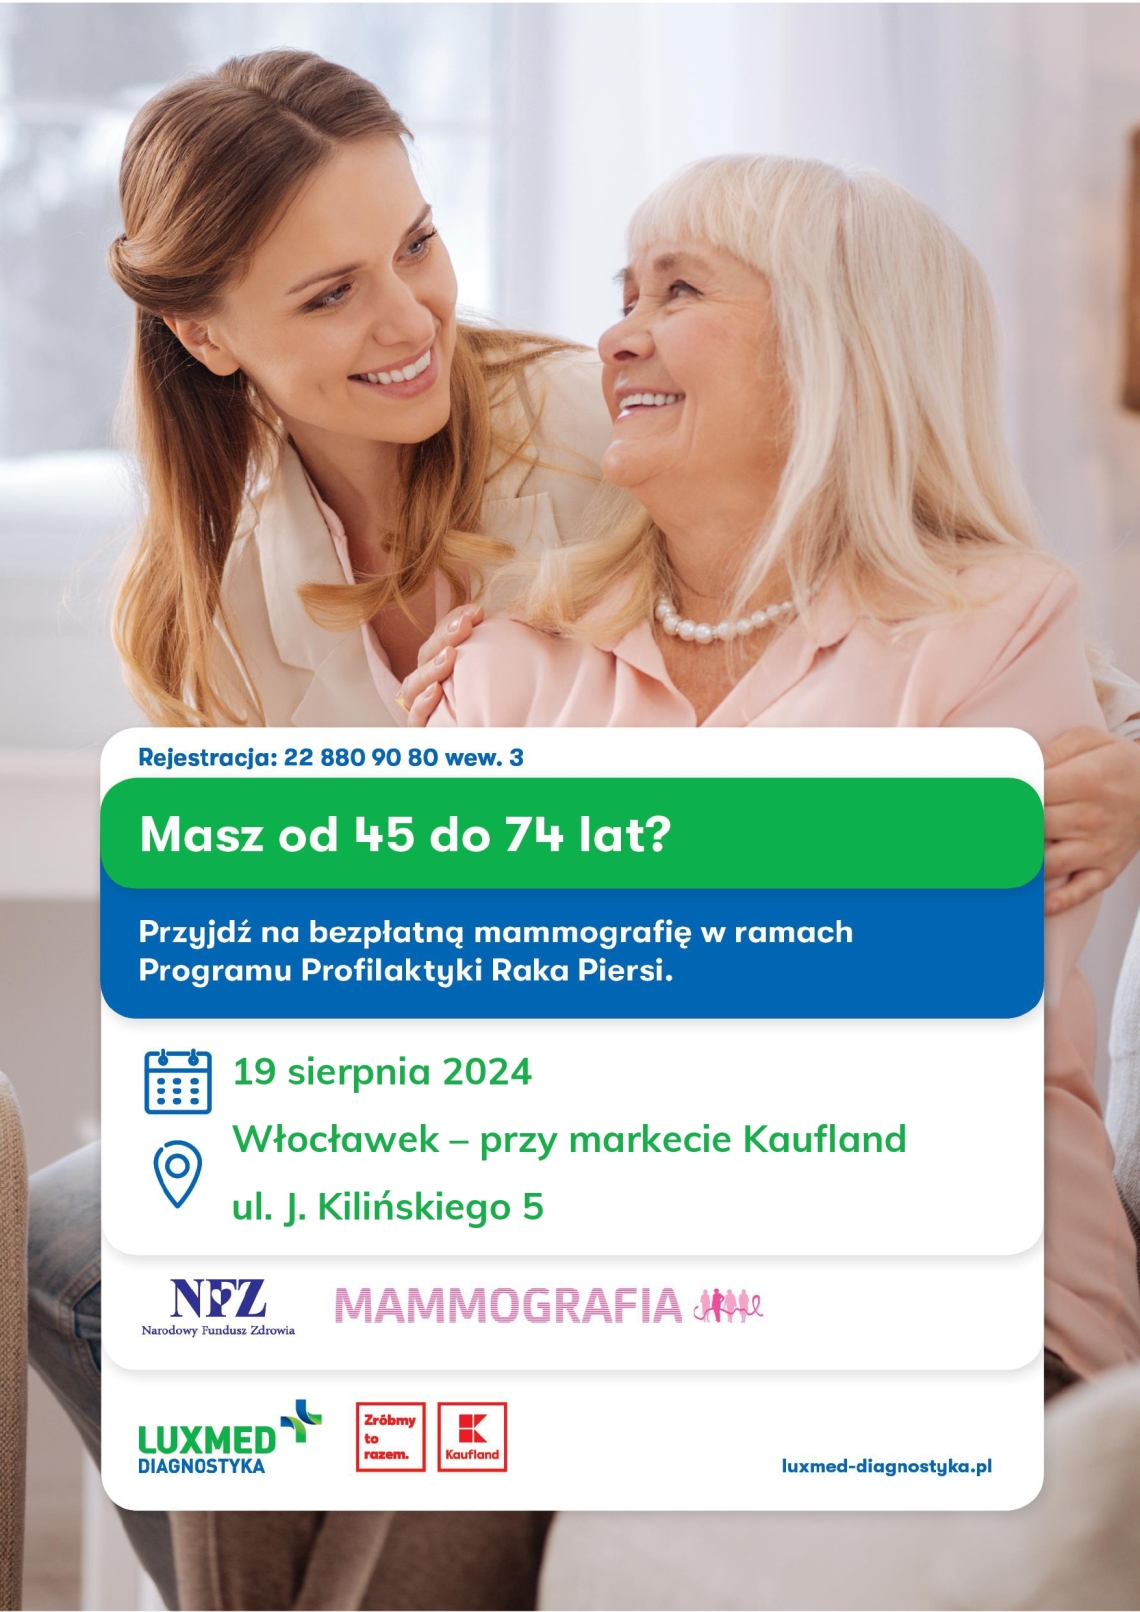 Bezpłatne badania mammograficzne w mobilnej pracowni mammograficznej LUX MED już w sierpniu! 